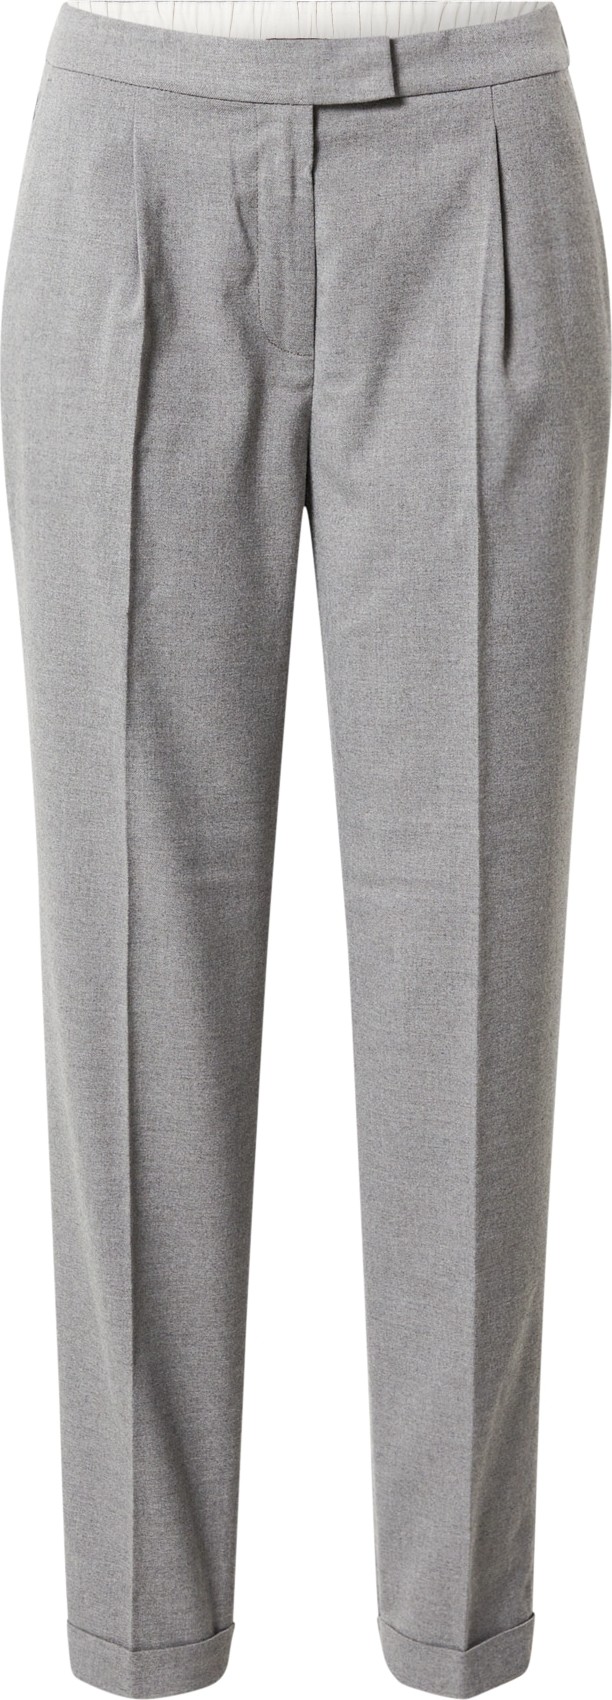 Esprit Collection Kalhoty s puky šedá